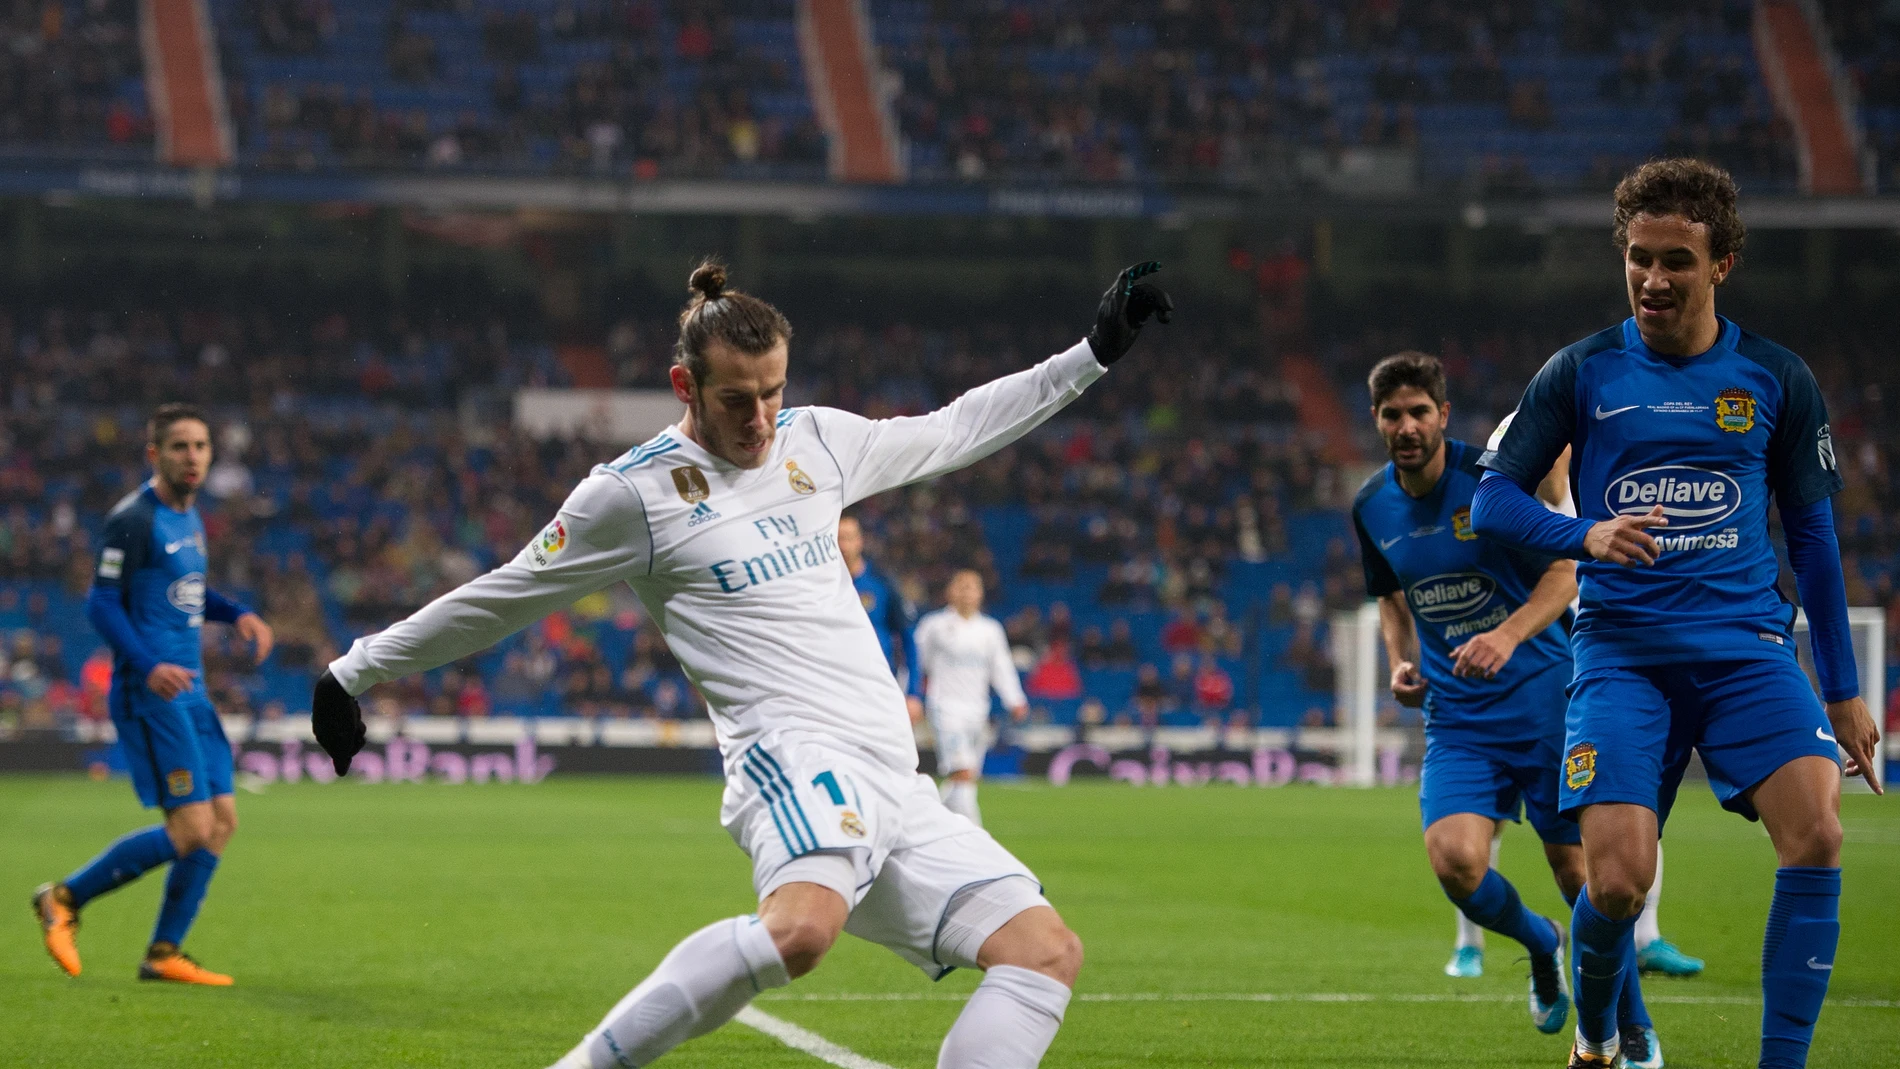 Gareth Bale se prepara para centrar ante el Fuenlabrada